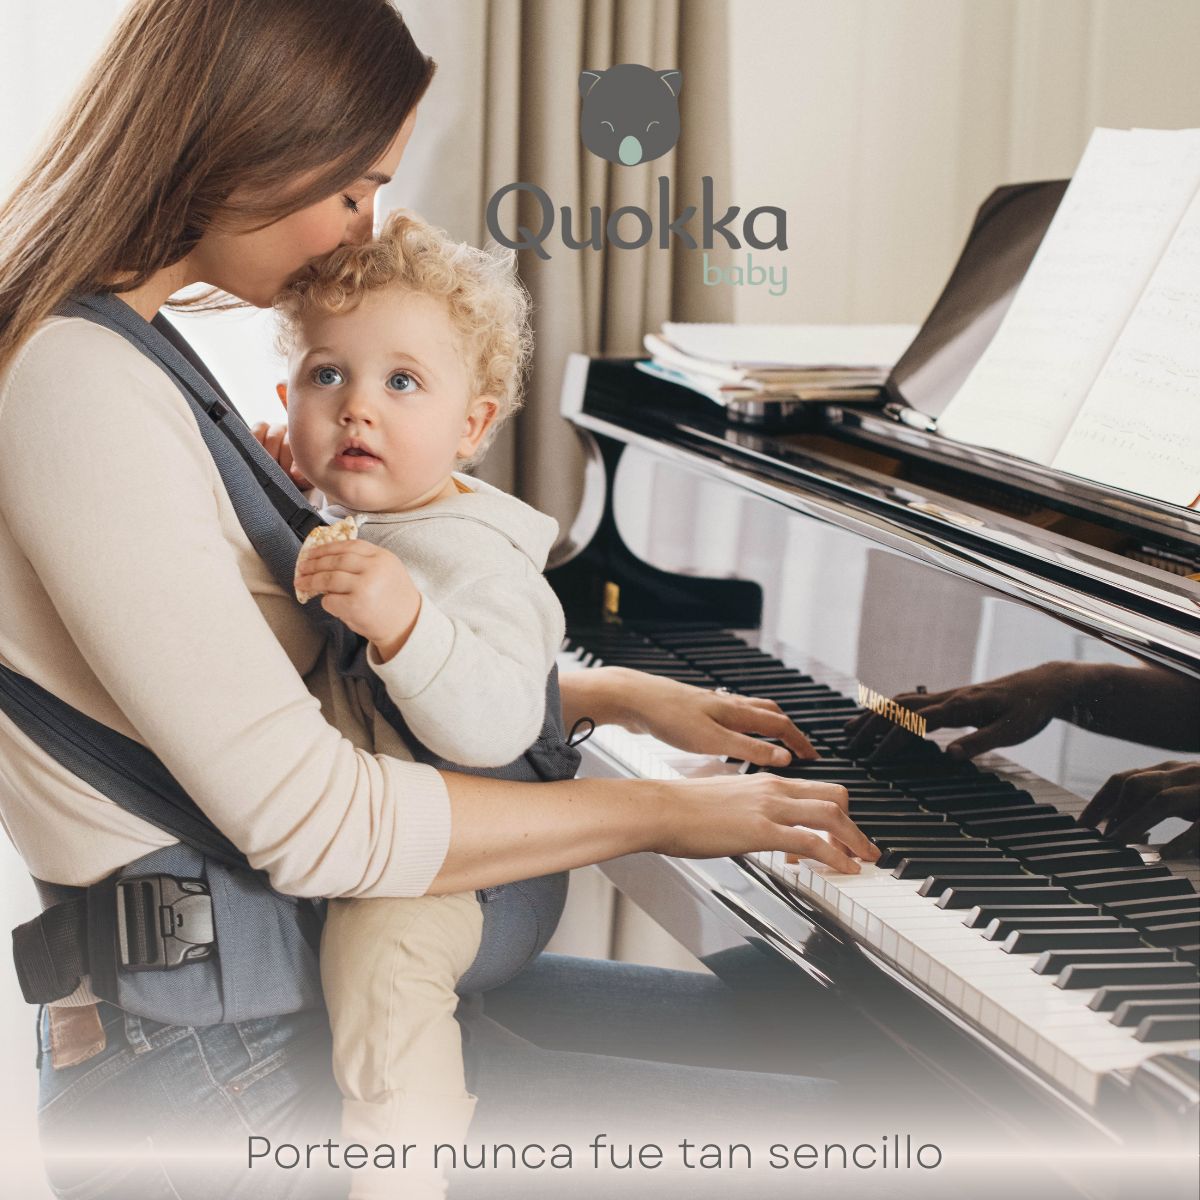 portabebes mei tai evolutivo Quokkababy con bebe grande y madre tocando el piano mientras disfruta del porteo del bebe